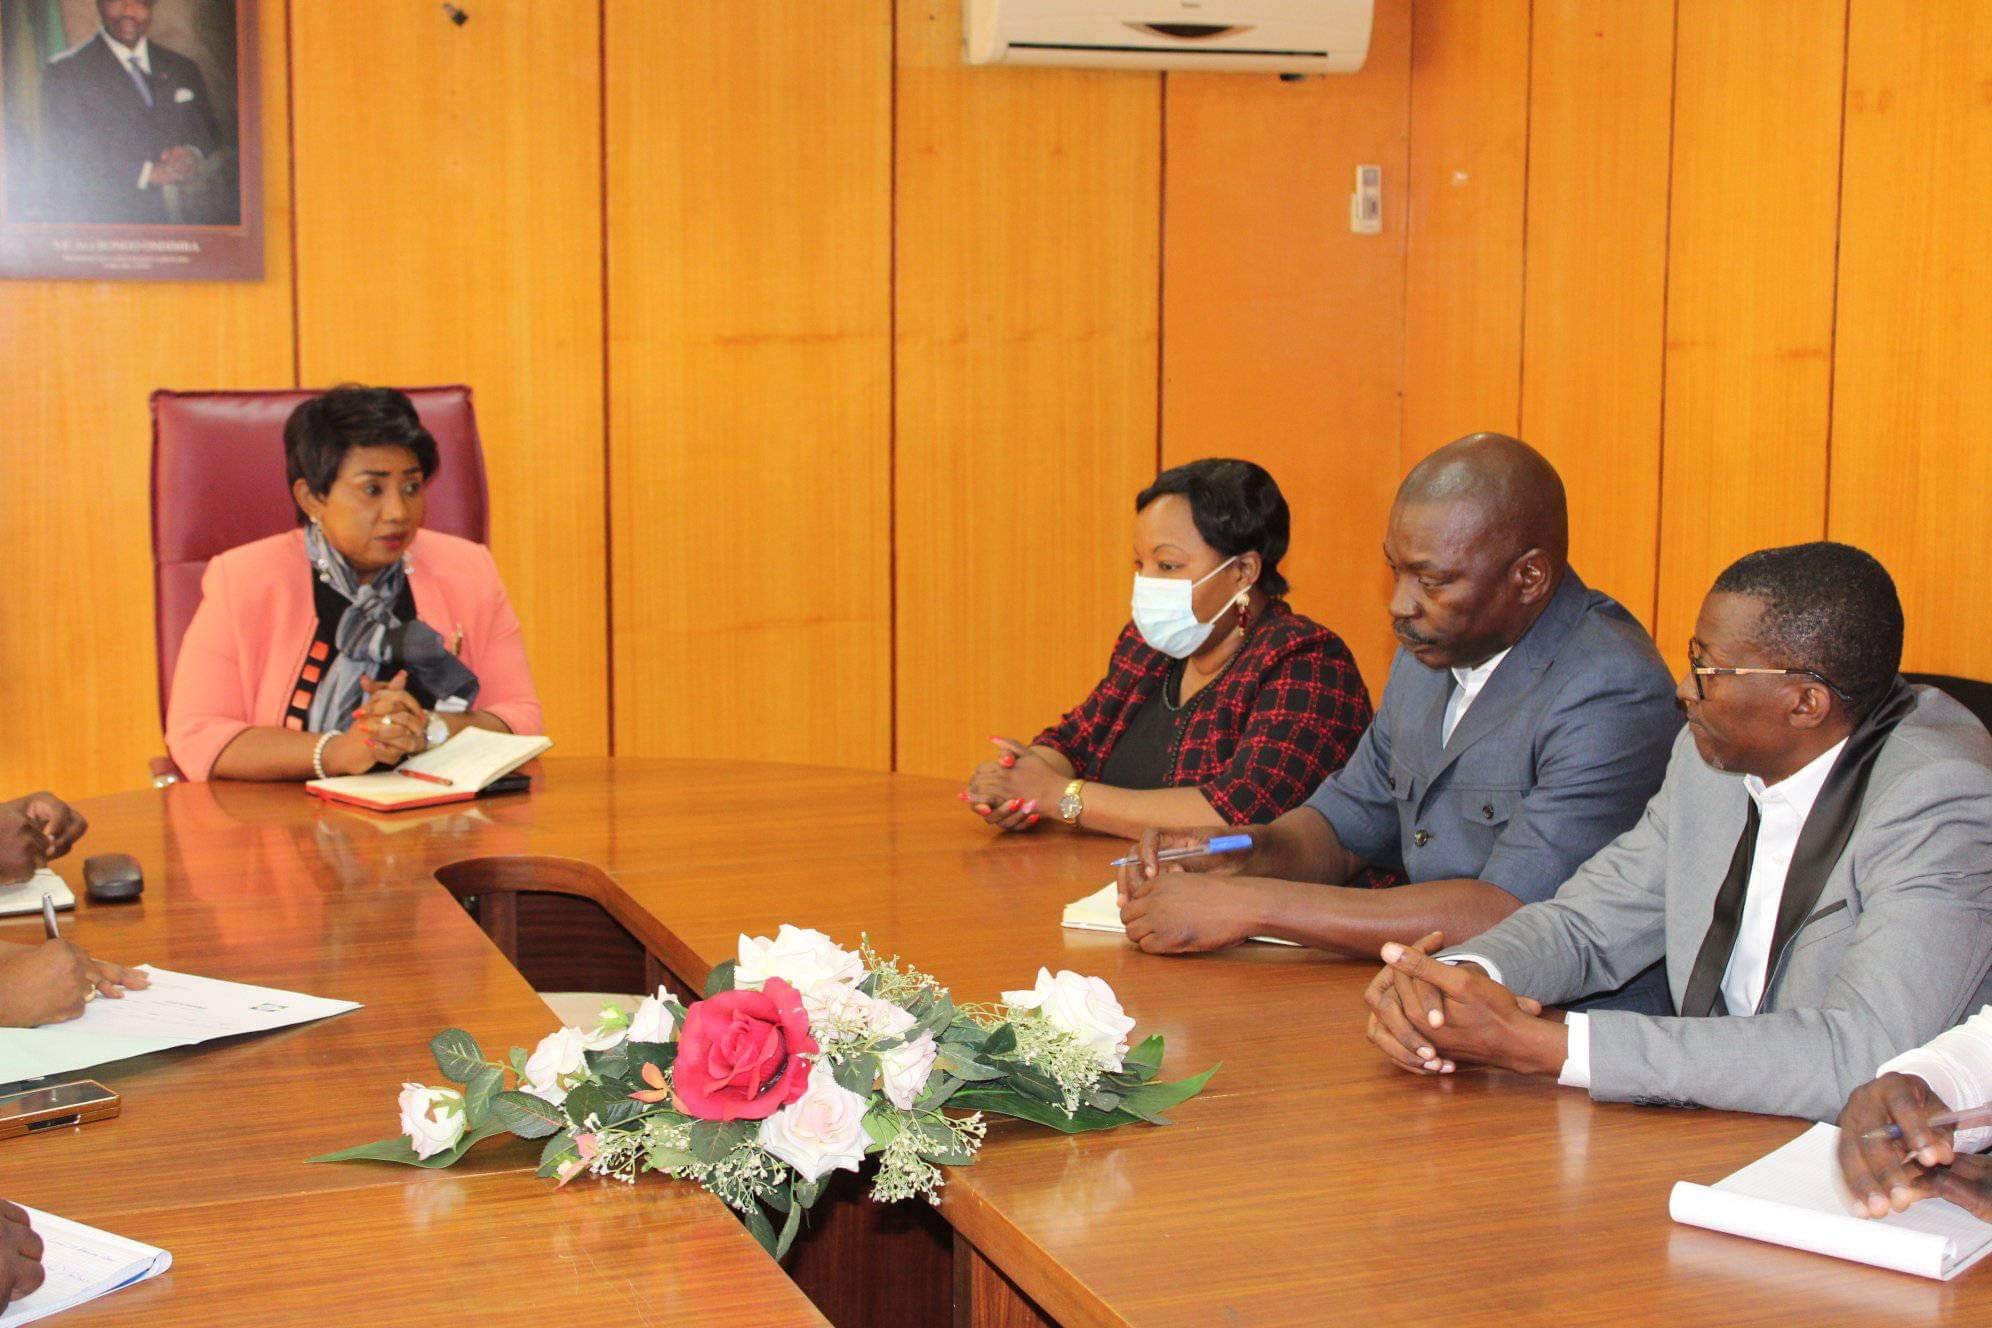  Délégation de La Croix Rouge gabonaise reçu en audience par le Ministre Délégué à la Santé et aux Affaires.